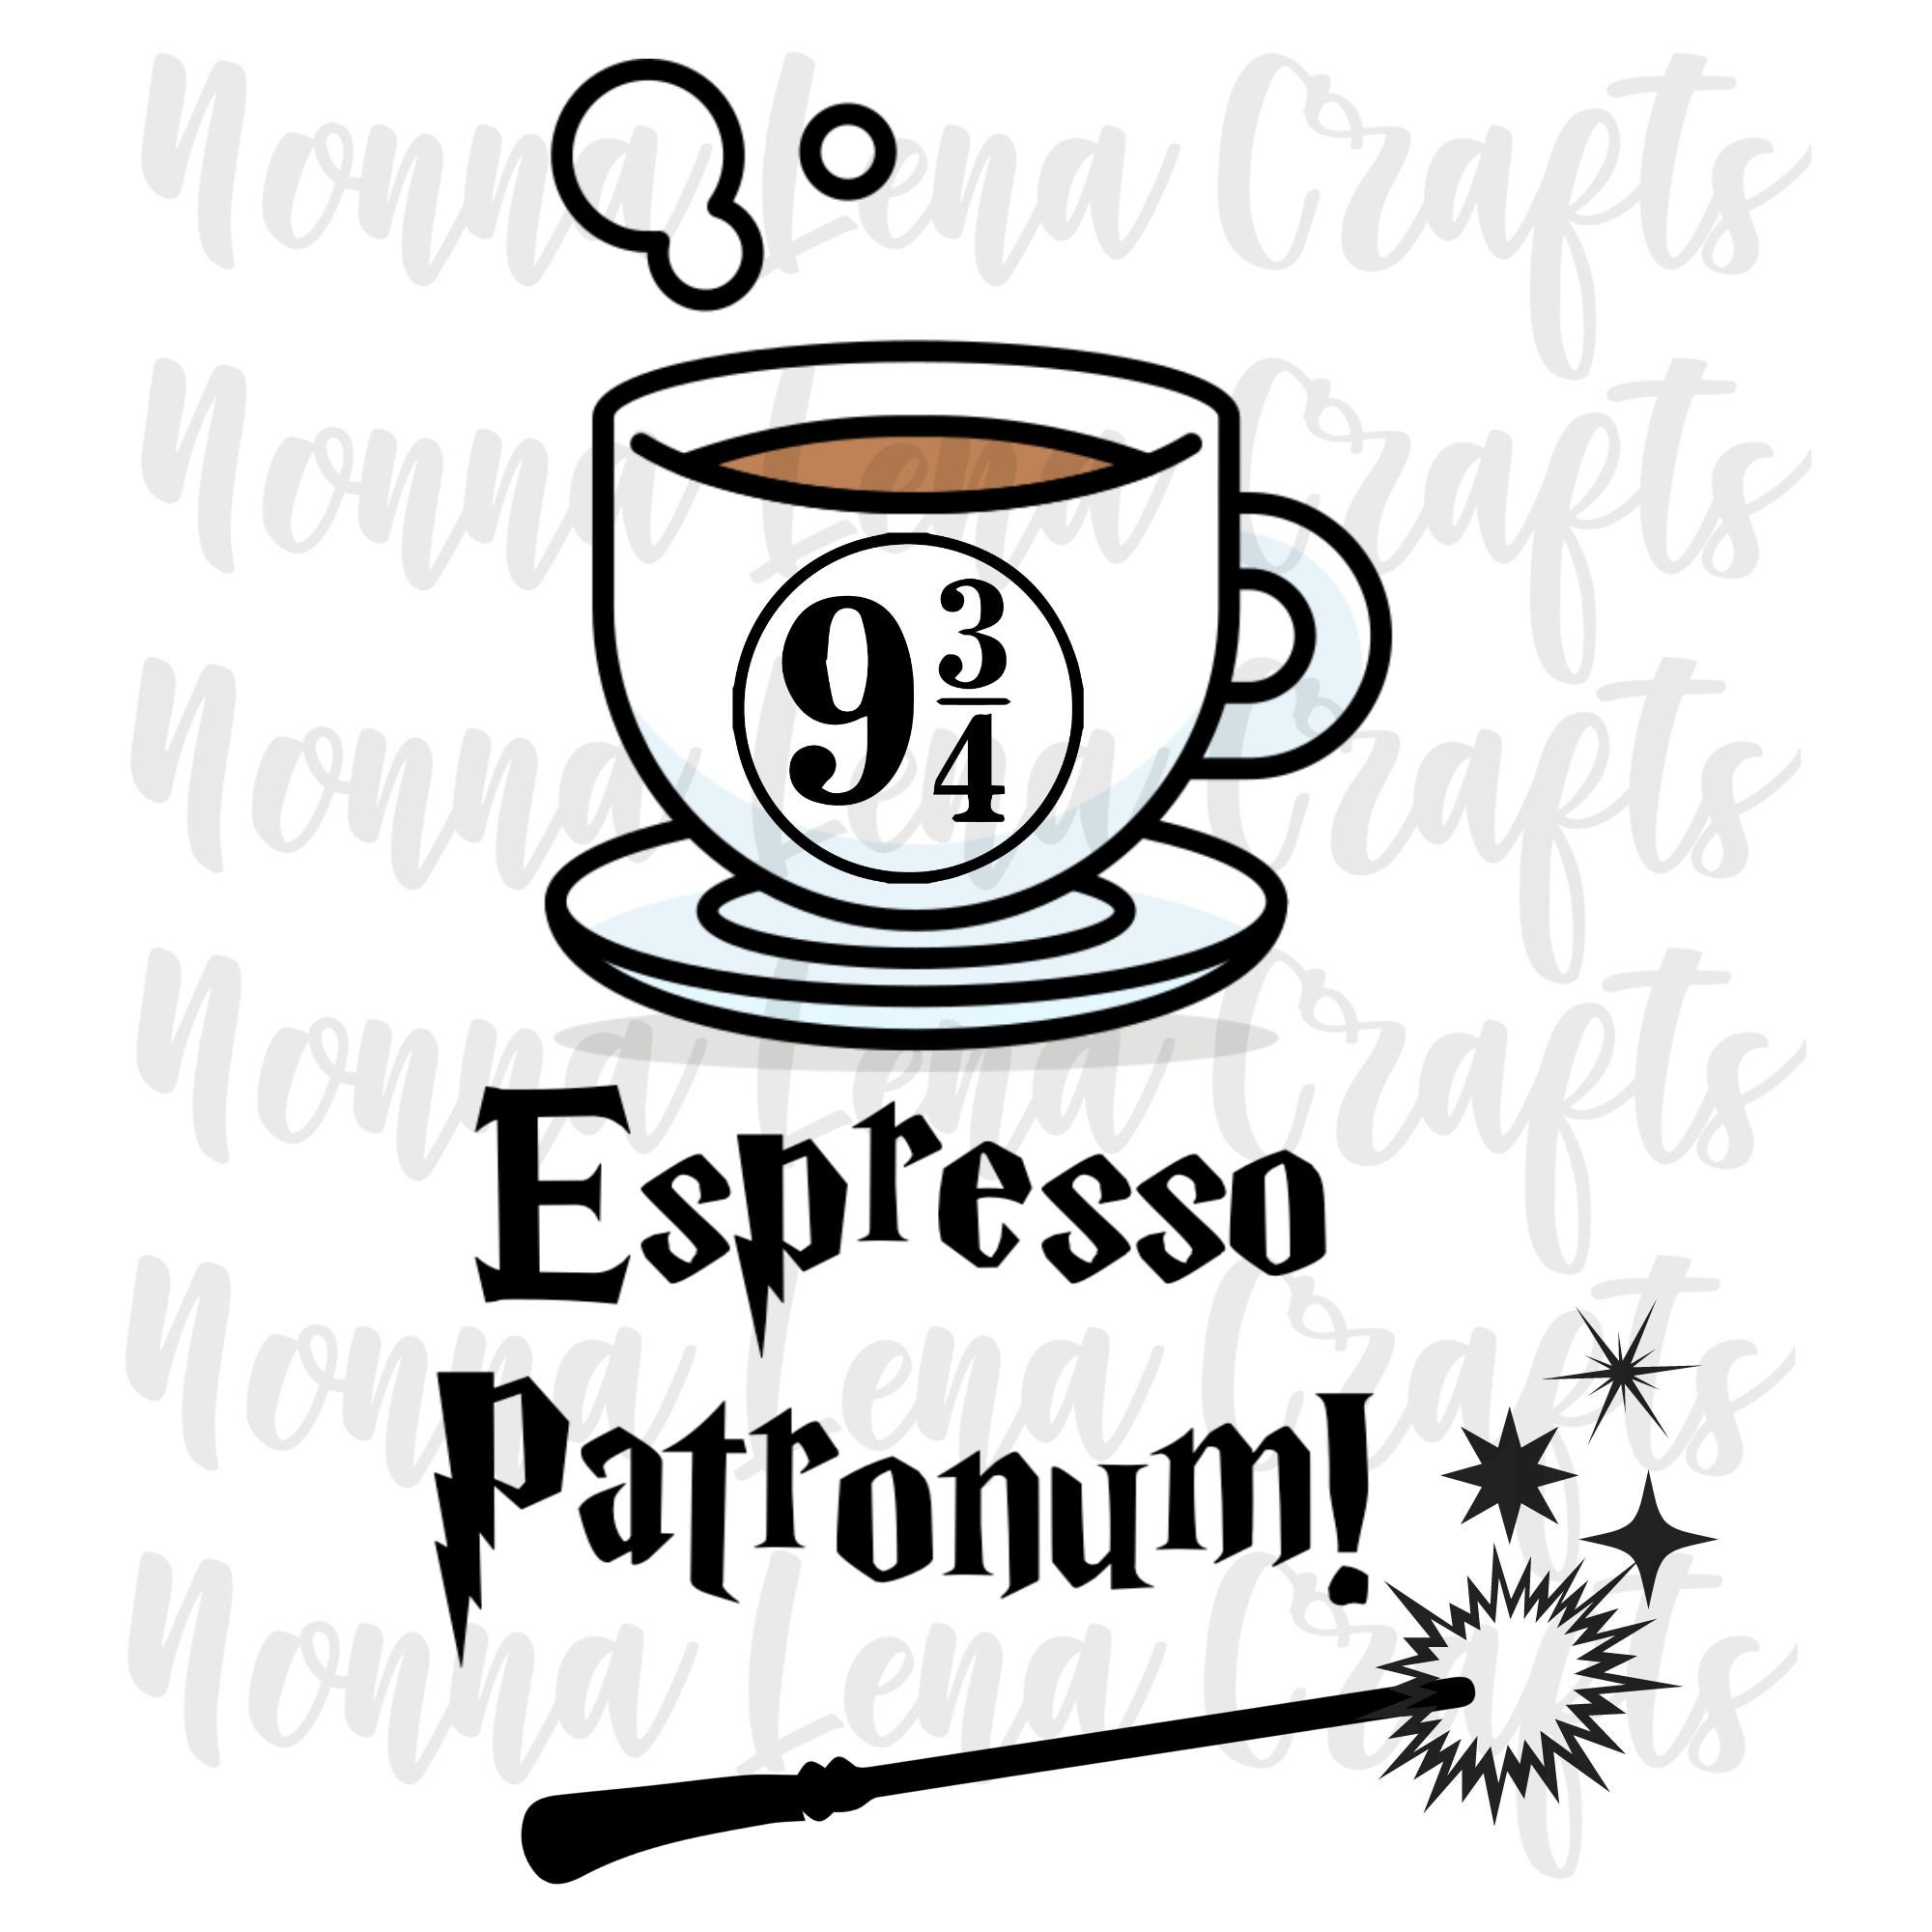 Harry P Espresso Patronum Svg Png Clipart Cut File Etsy